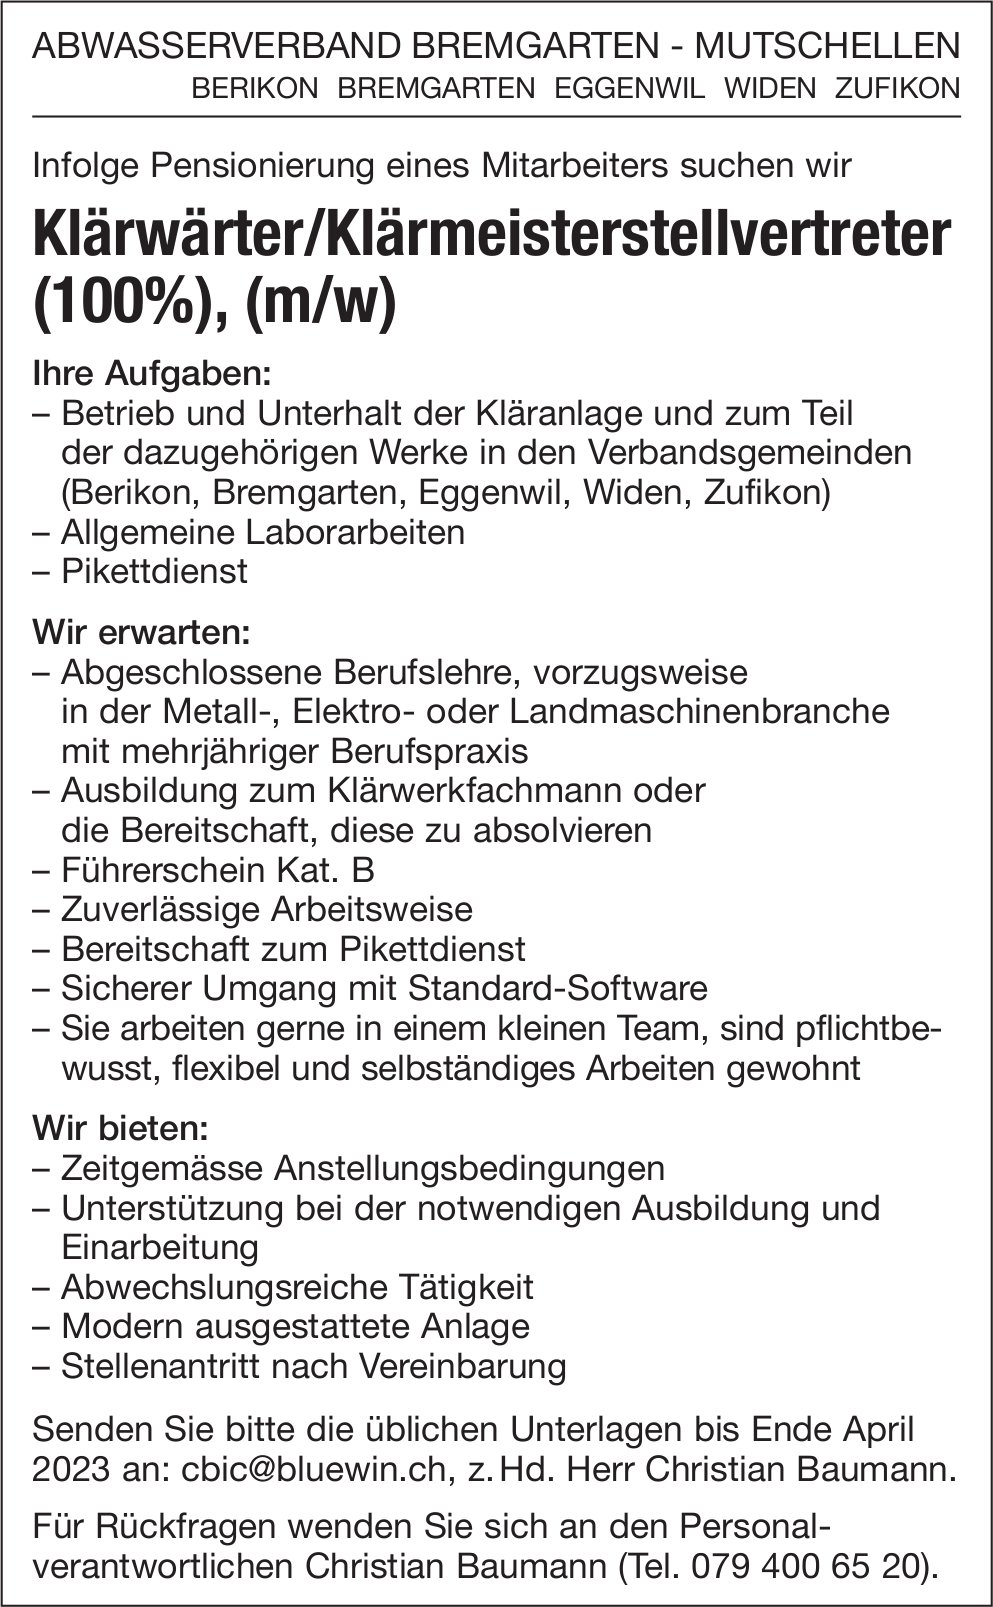 Klärwärter/Klärmeisterstellvertreter (100%), (m/w), Abwasserverband, Bremgarten-Mutschellen,  gesucht